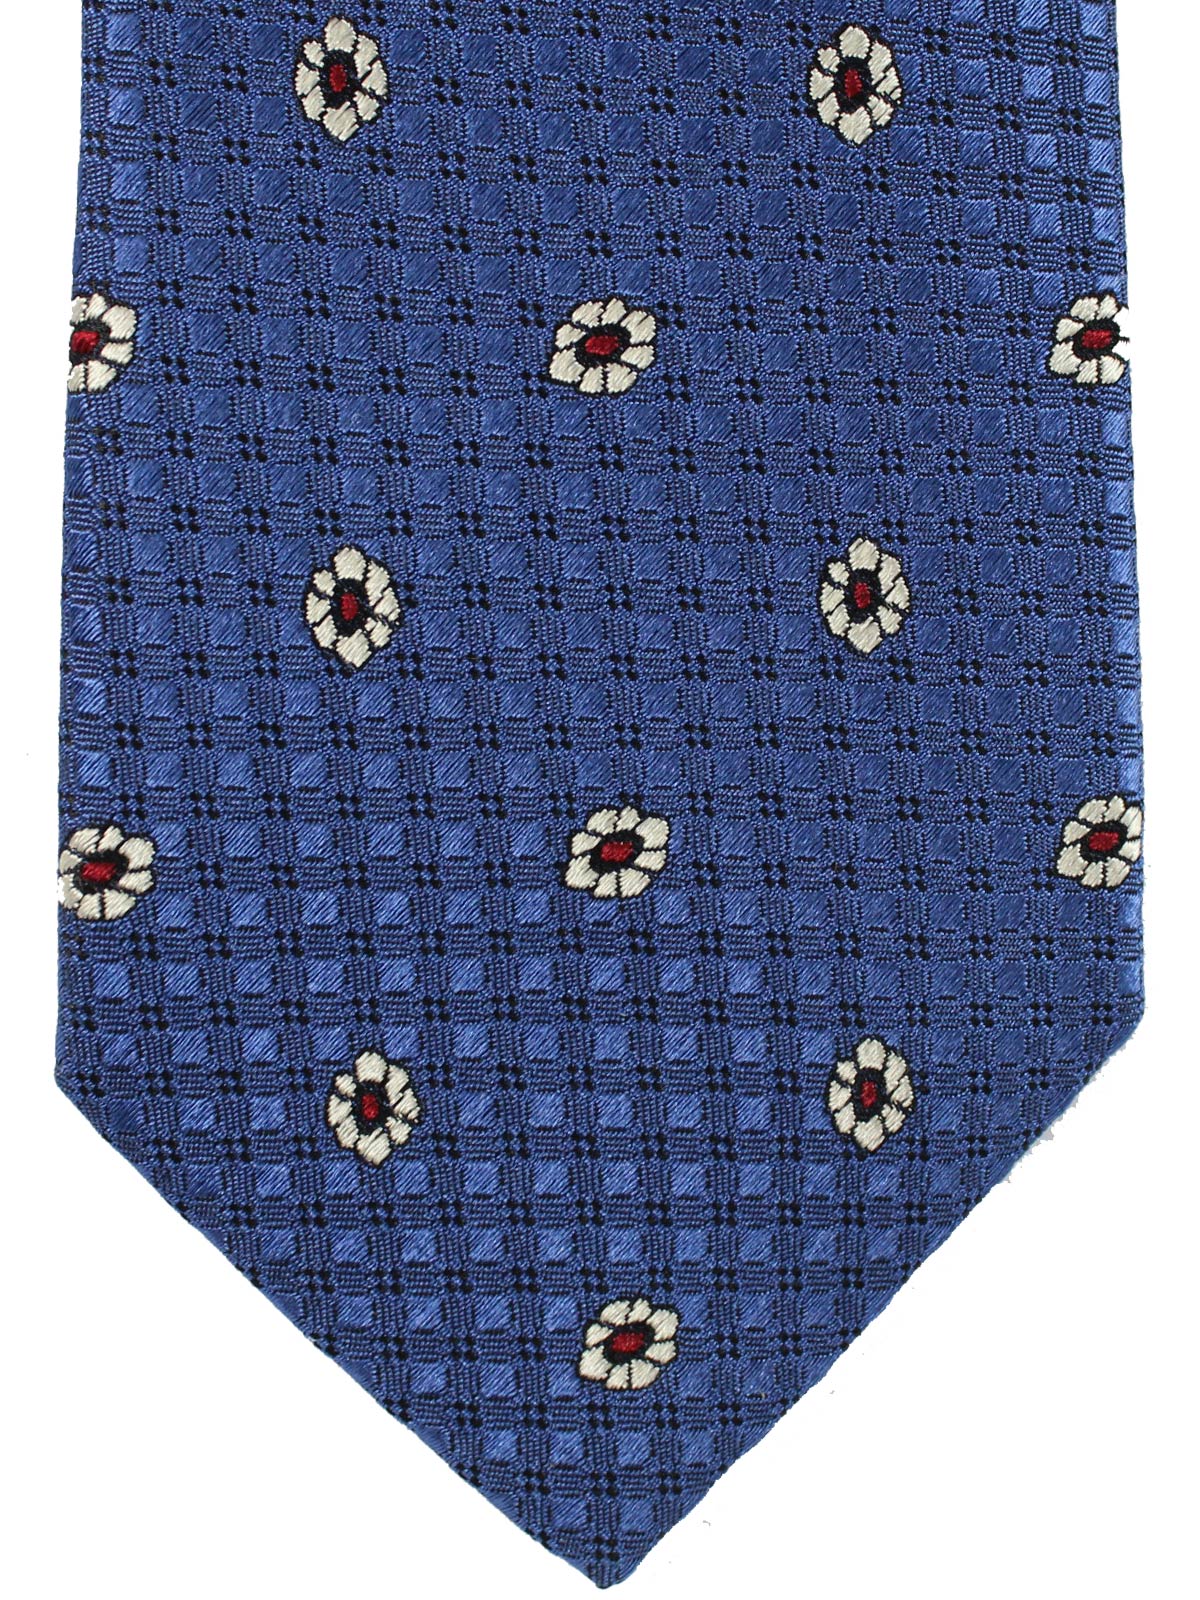 Canali Silk Tie Dark Blue Brown Silver Design SALE